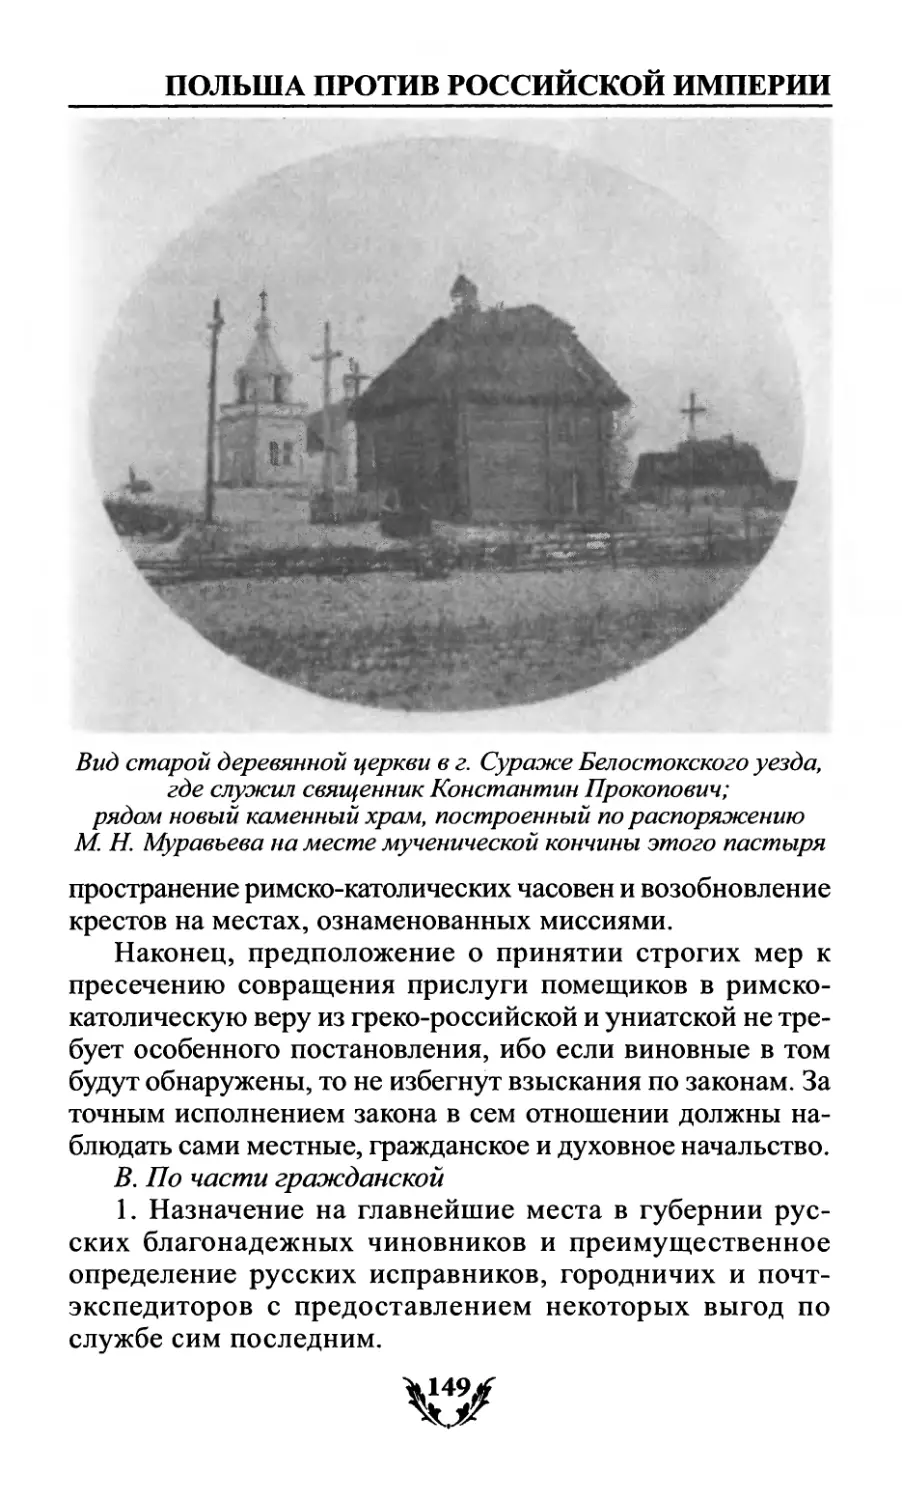 Вид старой деревянной церкви в г. Сураже Белостокского уезда